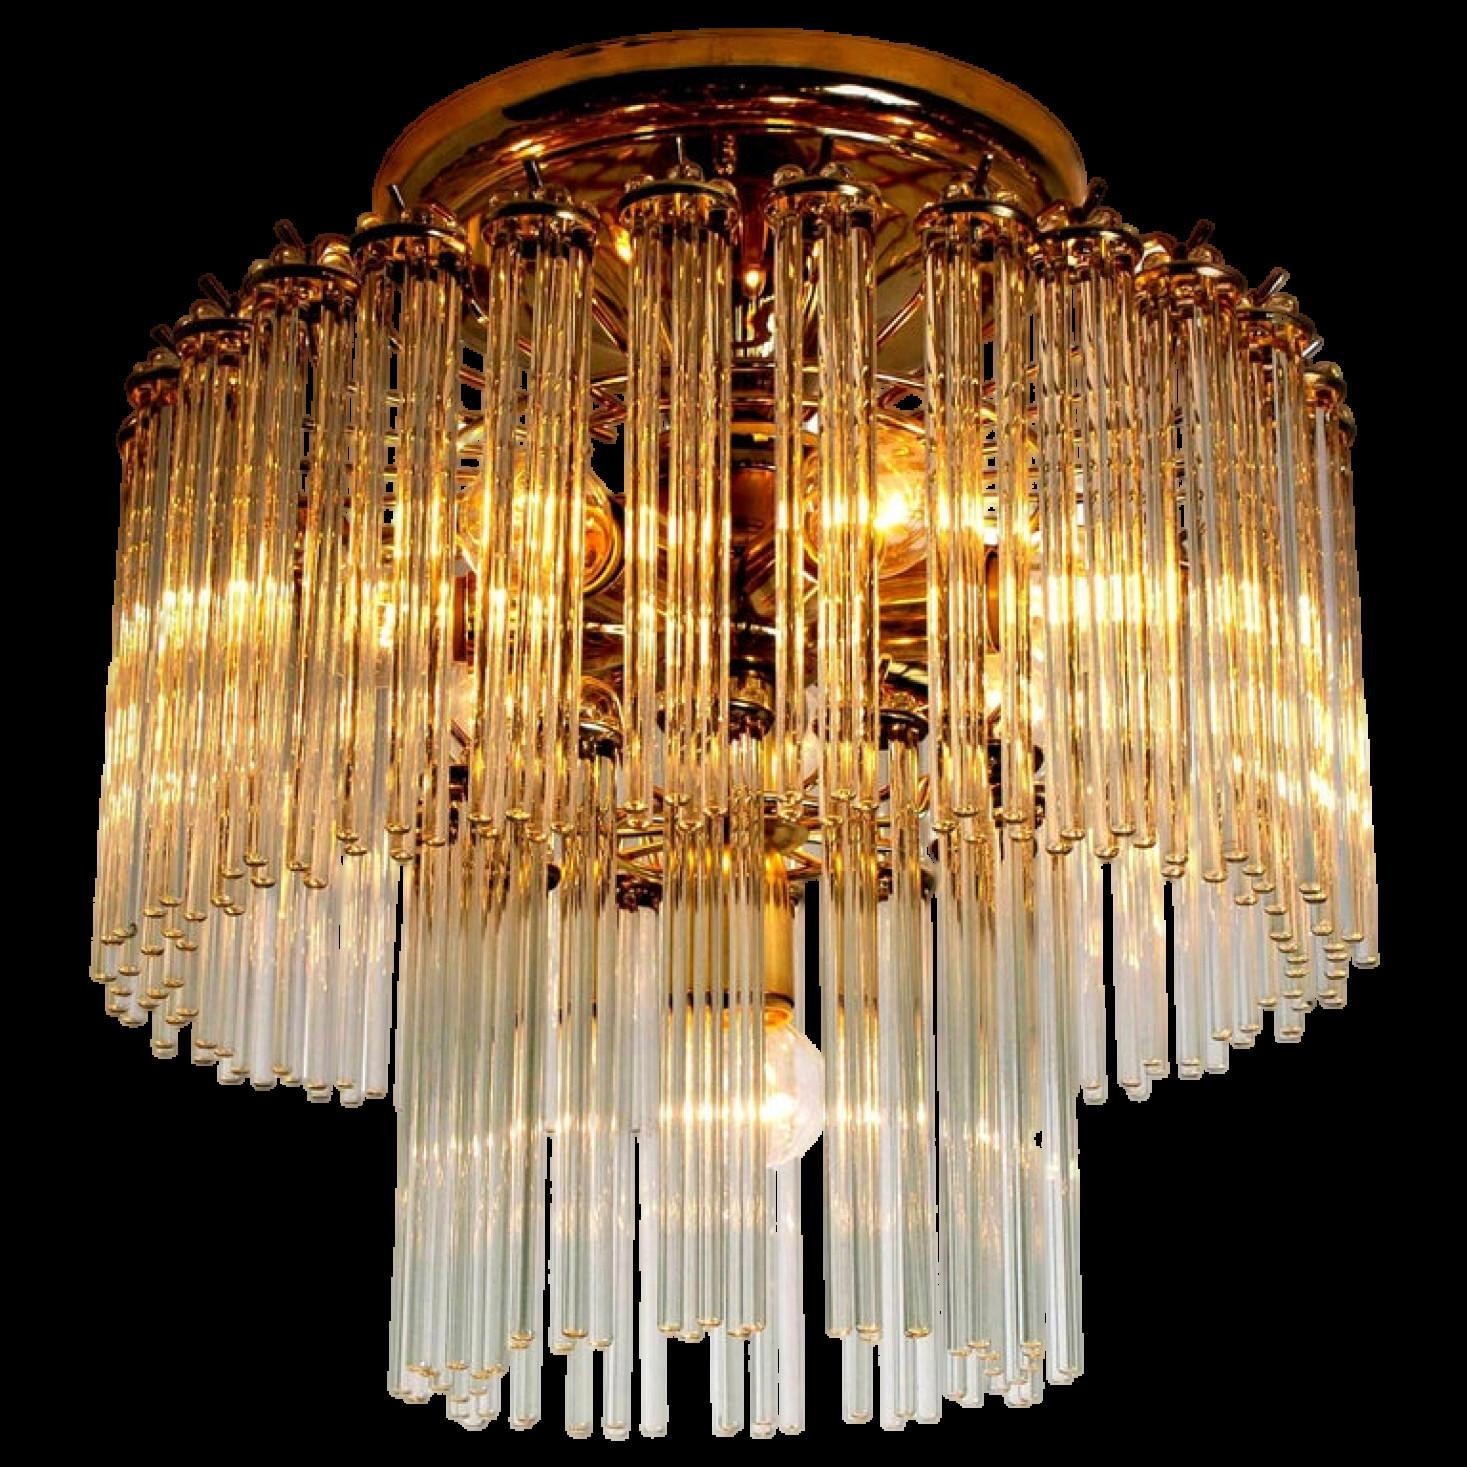 Eine italienische Mitte des Jahrhunderts Modern Glas Stab und Messing Gaetano Sciolari flush mount für Lightolier, circa 1960er-1970er Jahre. Leuchtet wunderschön.
Mit 48 durchbrochenen, runden, lichtdurchlässigen Glasstäben (7,1 Zoll), die auf